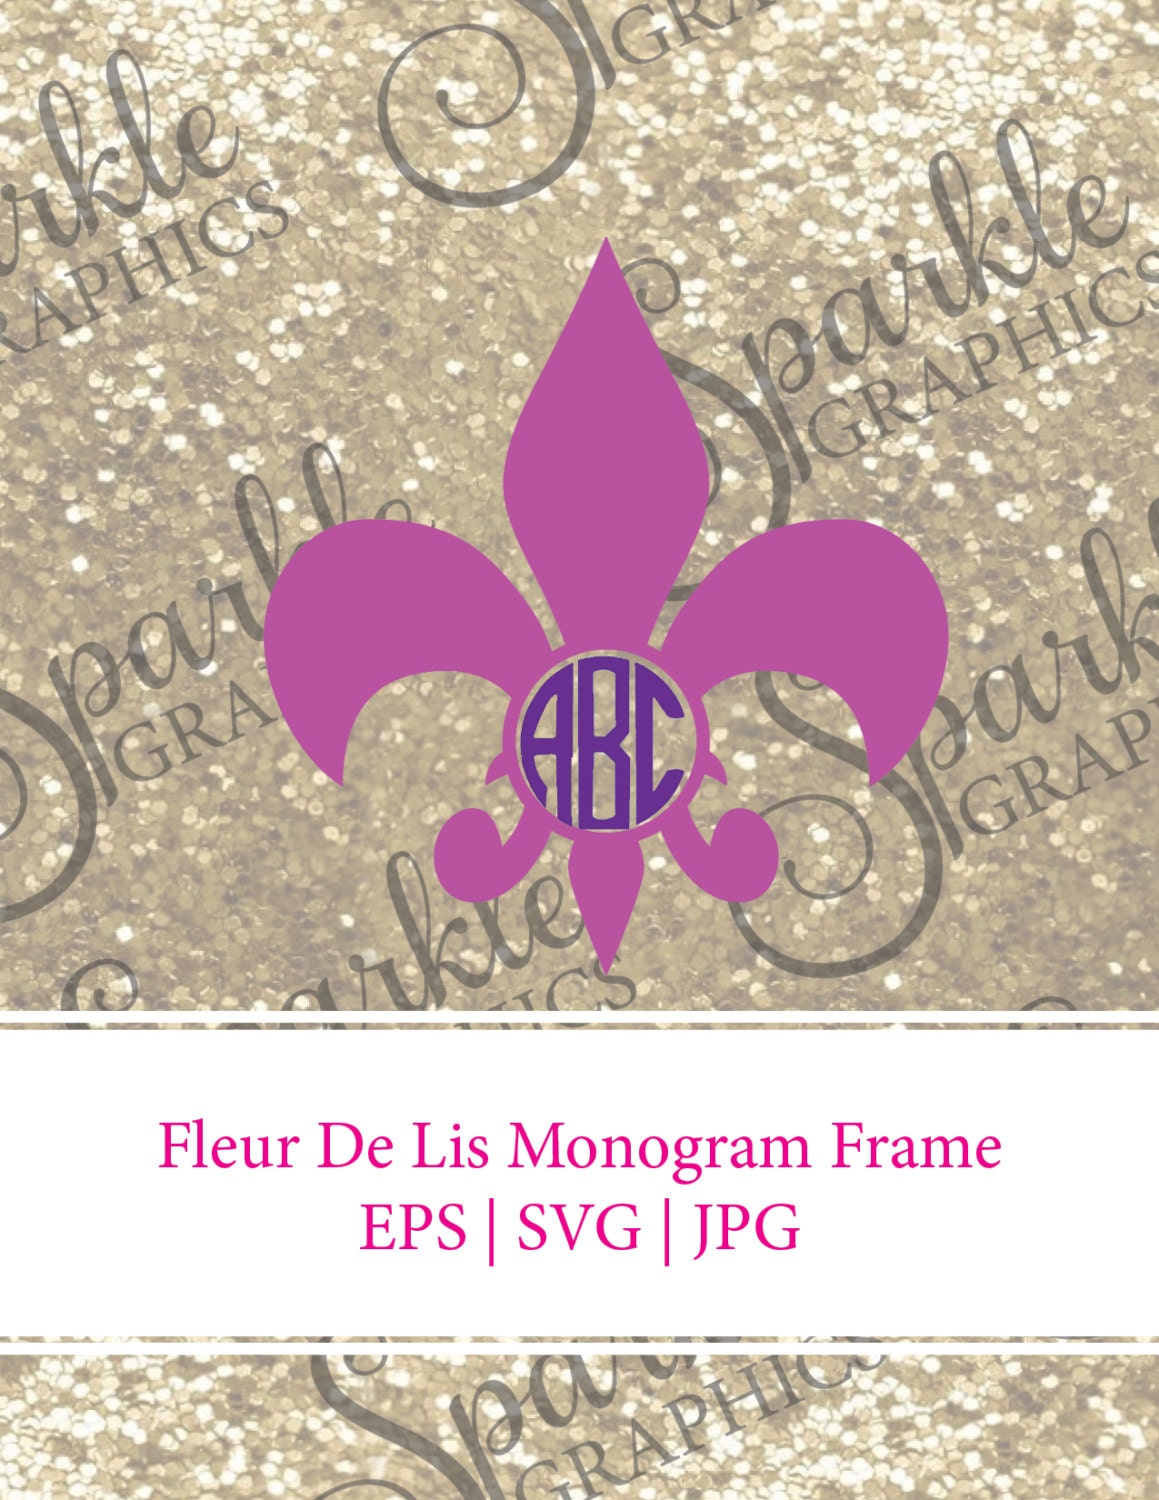 Download SALE Fleur De Lis Monogram Frame Cuttable Files svg File